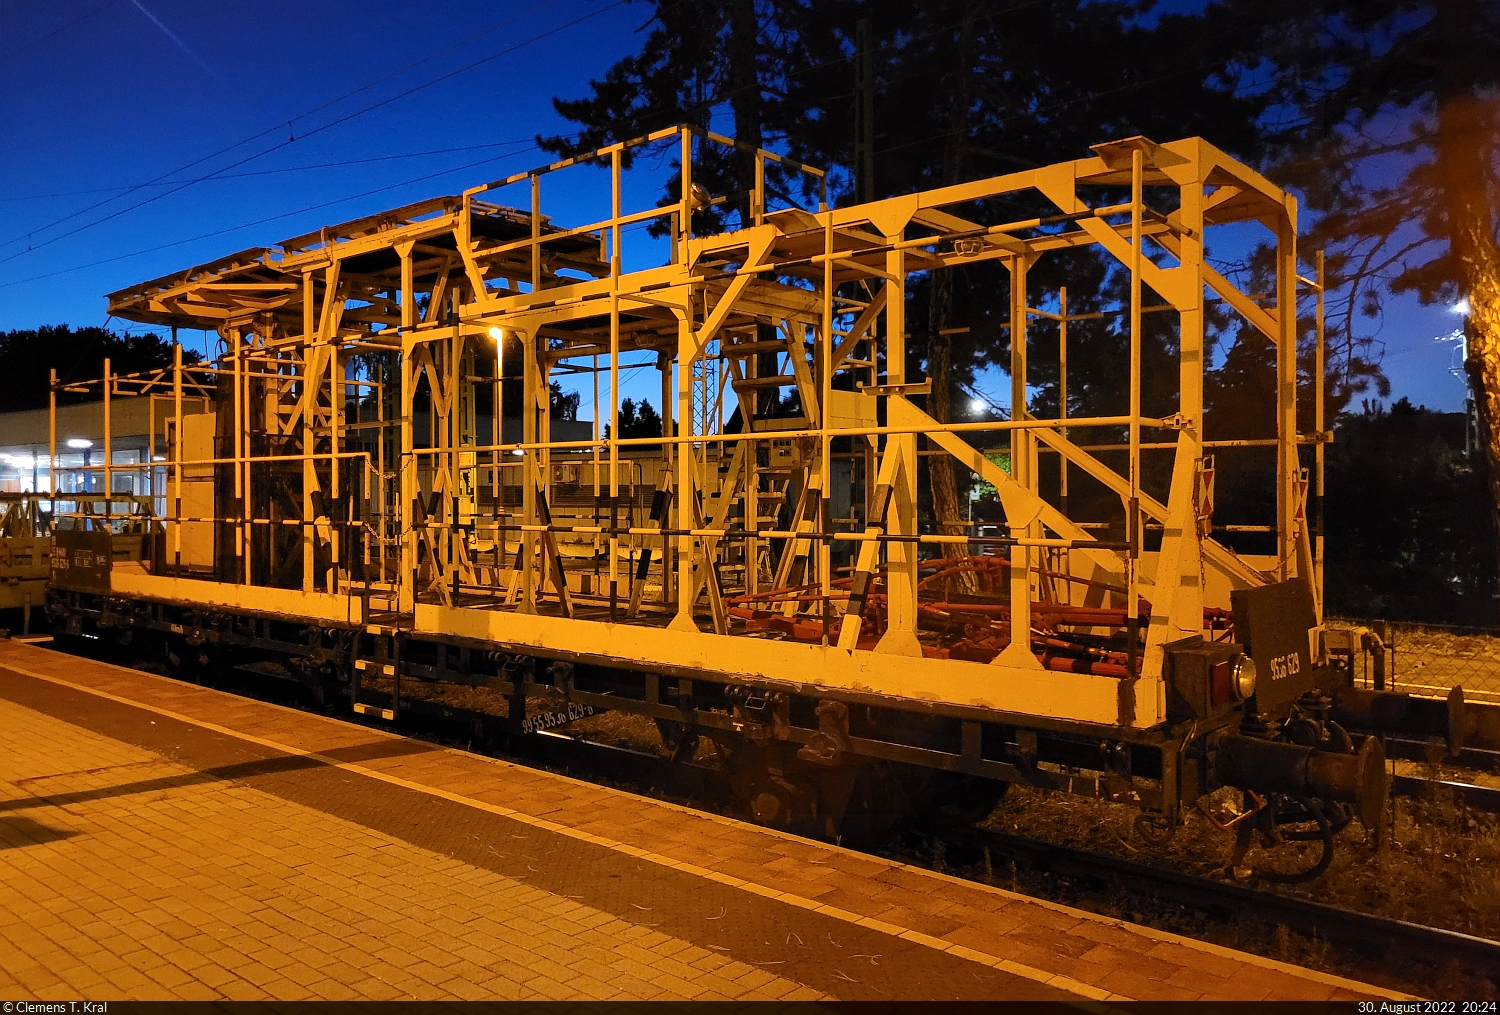 Dieser zweiachsige Bauwagen mit Geländer trägt die Bezeichnung  Yf  (99 55 9536 629-6 H-MÁV) und ist an letzter Stelle einer Überführungsfahrt mit 618 019-7 (NOHAB M61 019) eingereiht, die im Bahnhof Balatonfenyves (HU) eine Pause einlegt.

🧰 MÁV
🕓 30.8.2022 | 20:24 Uhr